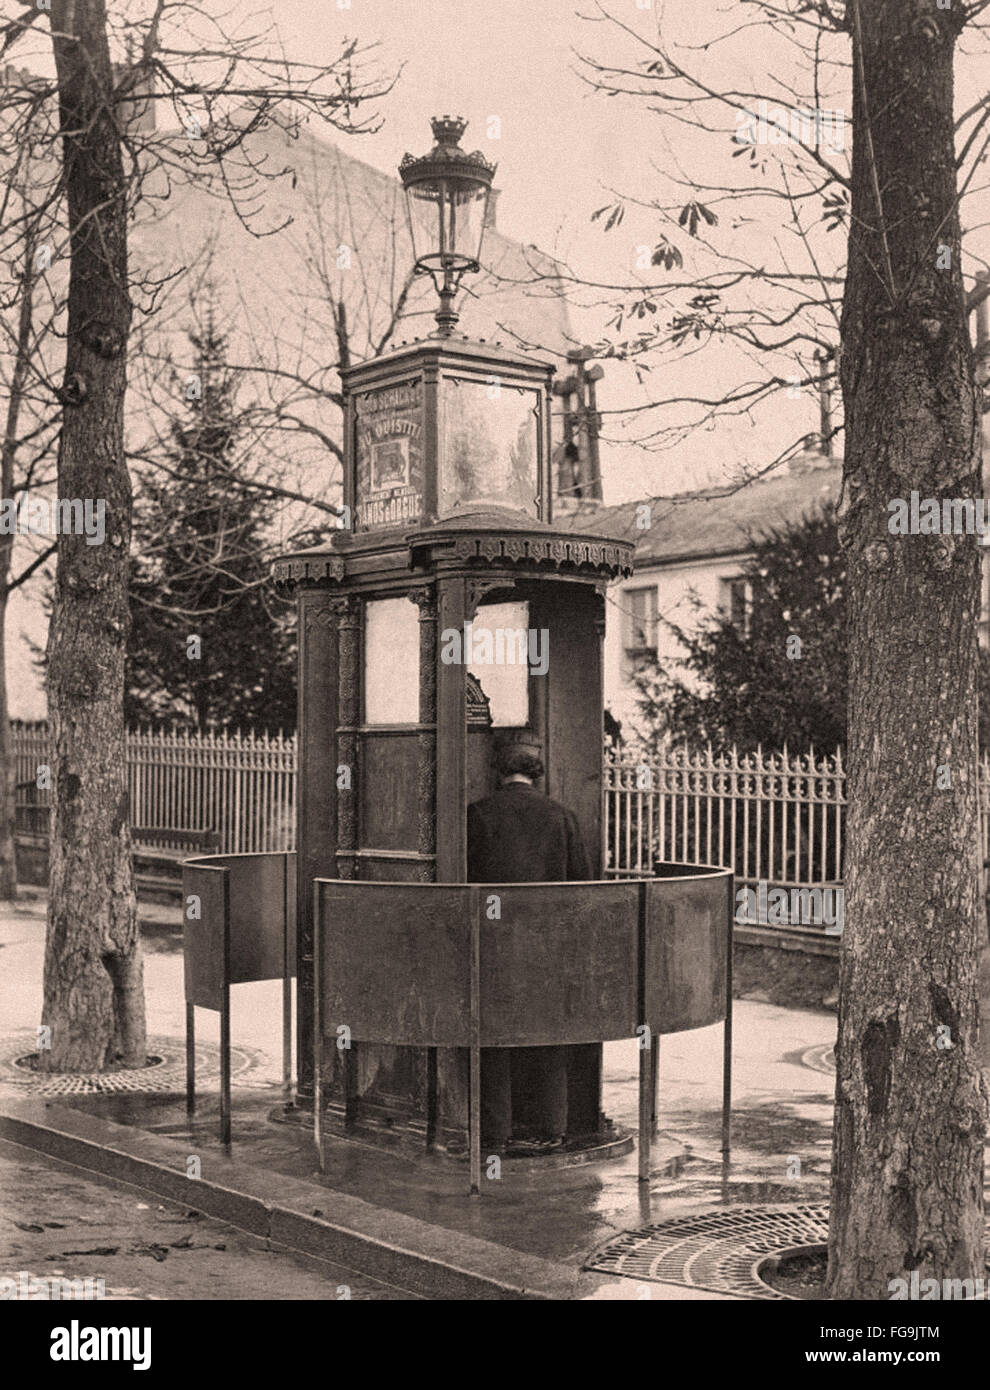 Les urinoirs publics à Paris dans le 19e siècle Banque D'Images